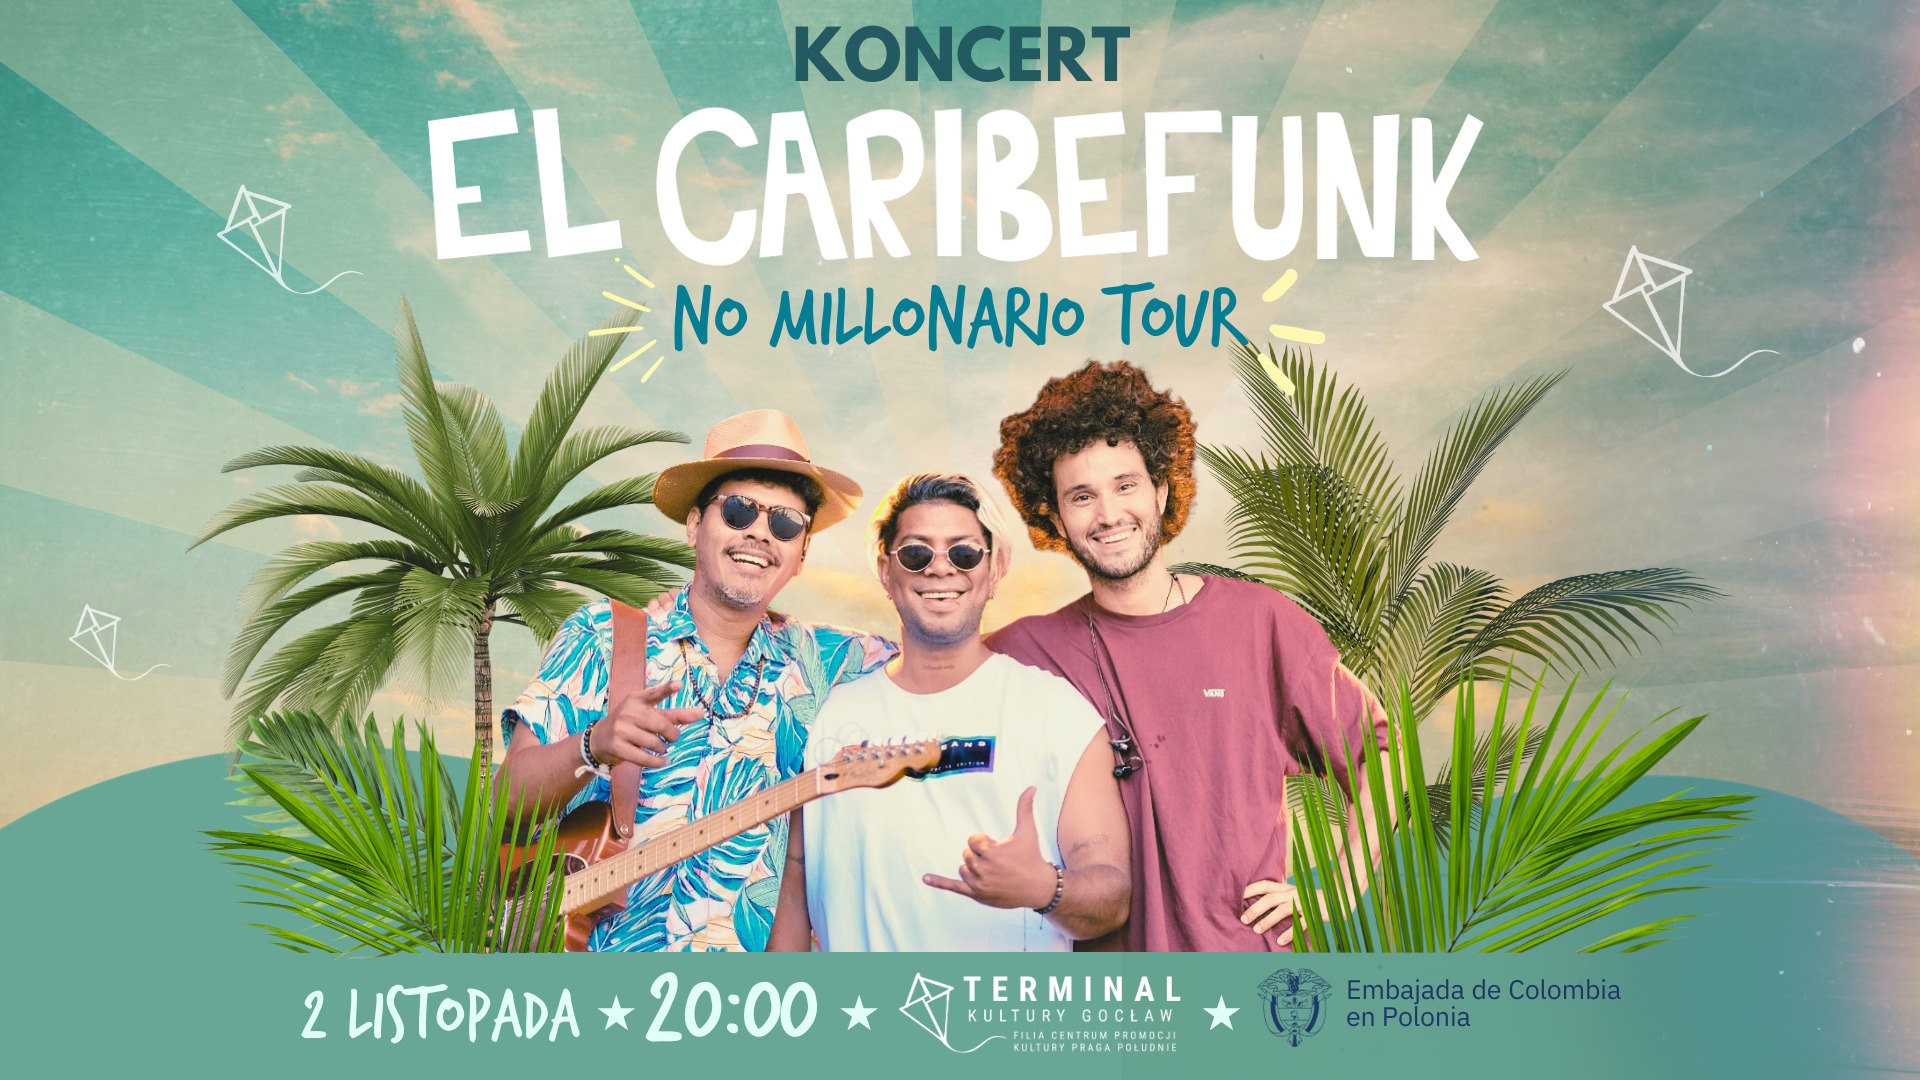 EL CARIBEFUNK: NO MILLONARIO TOUR